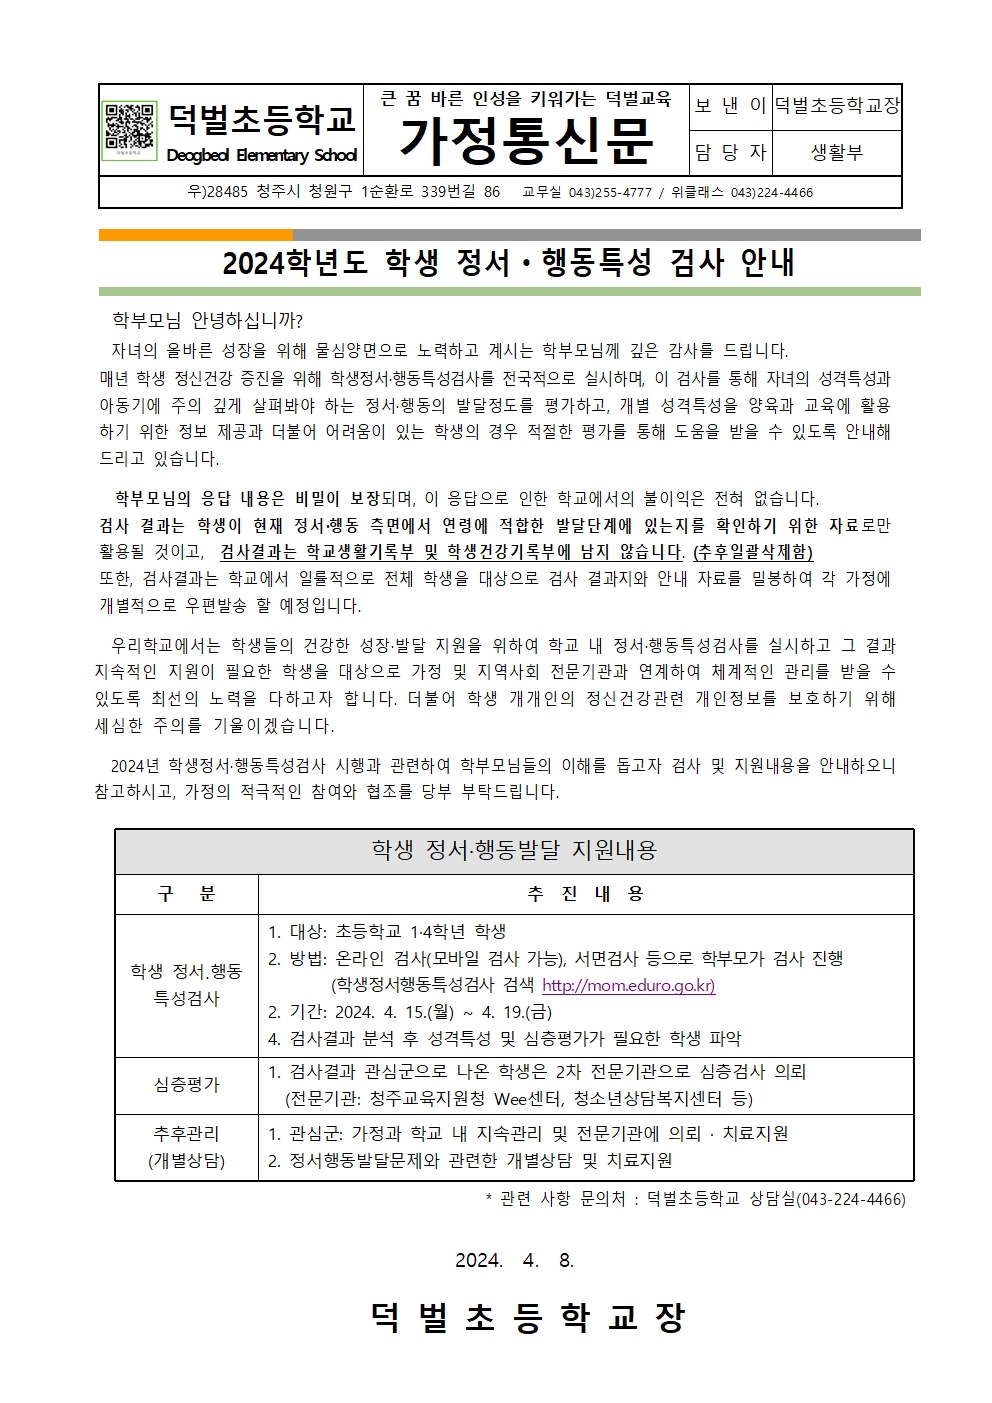 2024. 학생정서행동특성검사 안내(가정통신문)